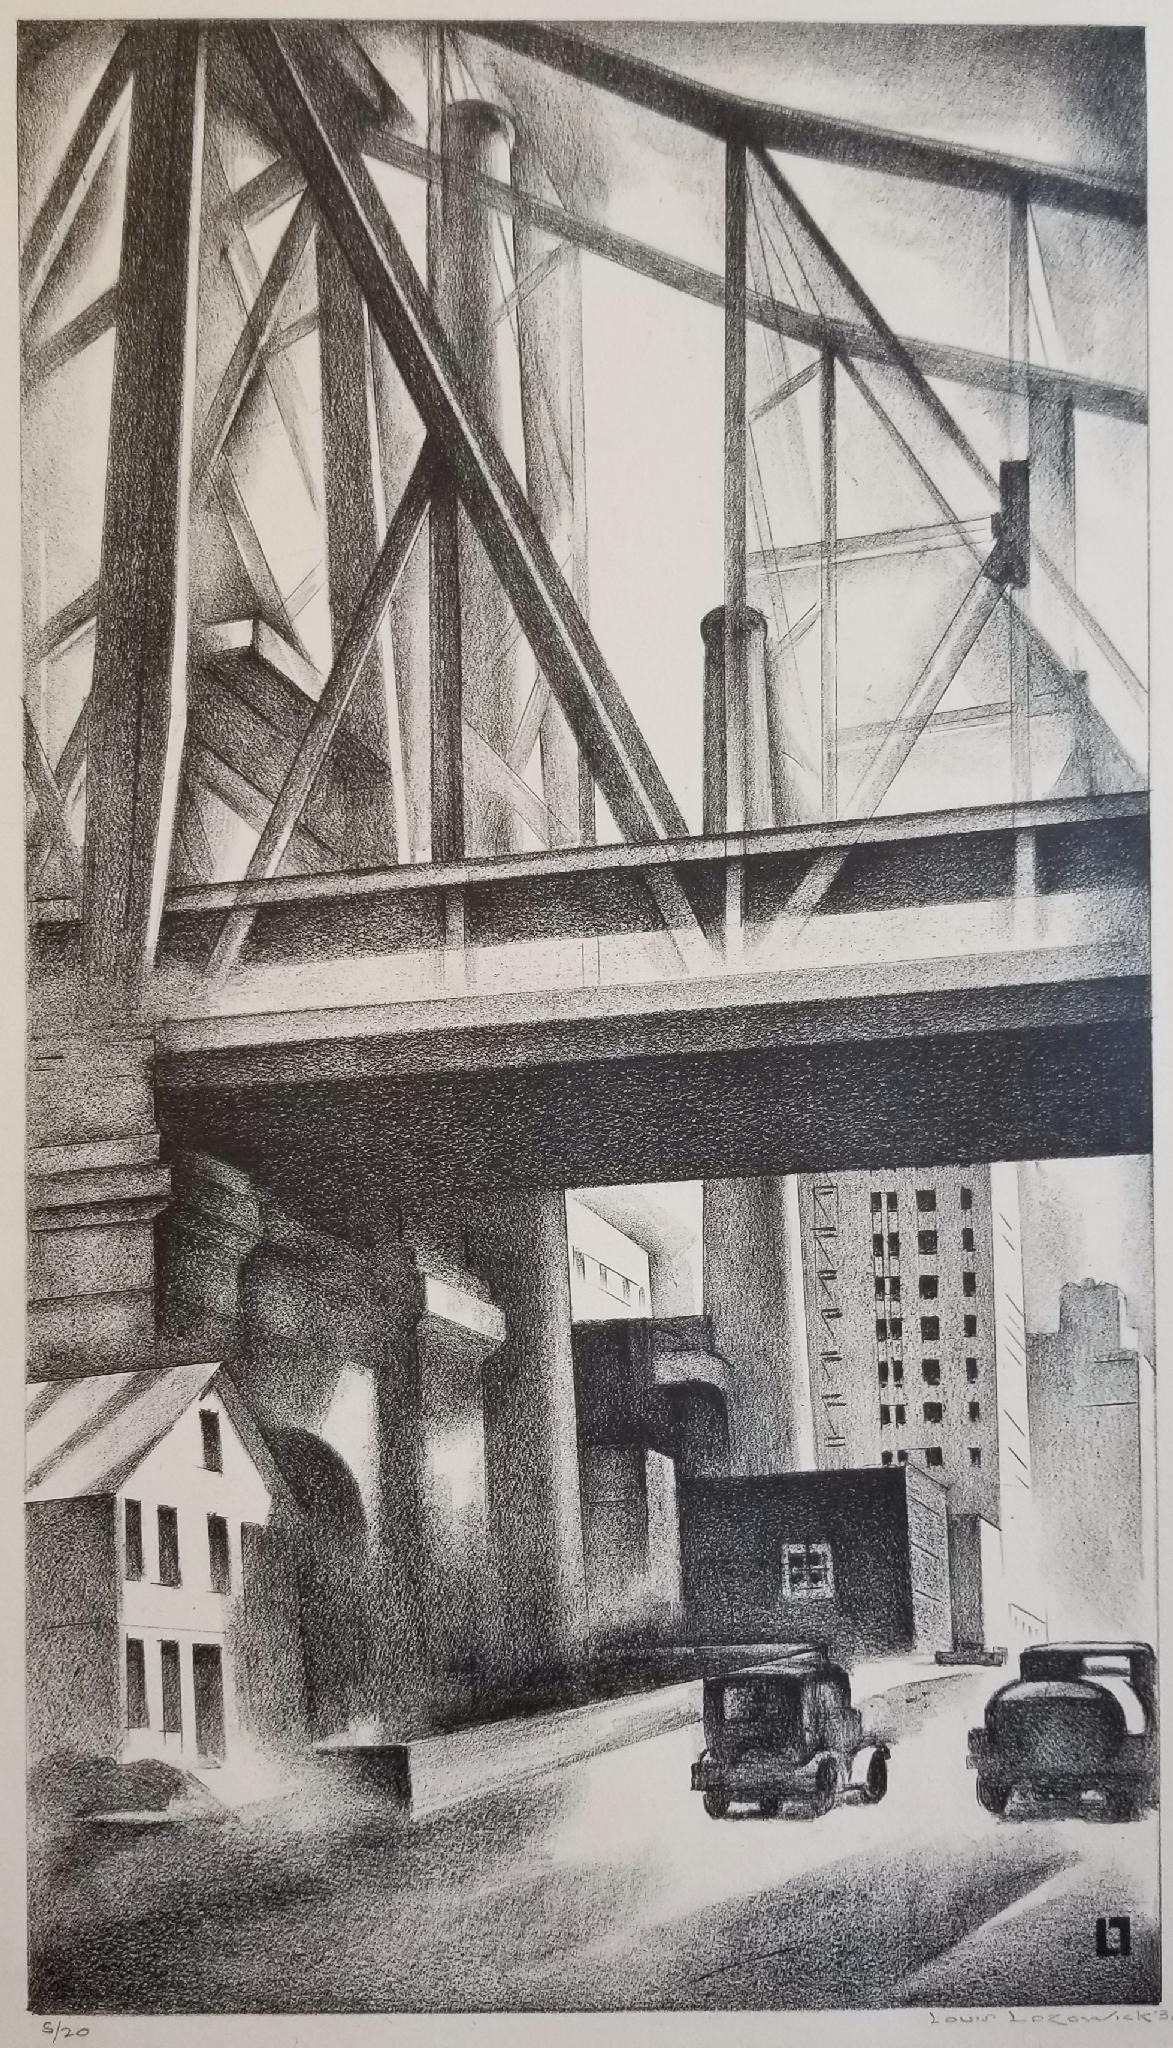 Louis Lozowick Landscape Print - Under the Bridge